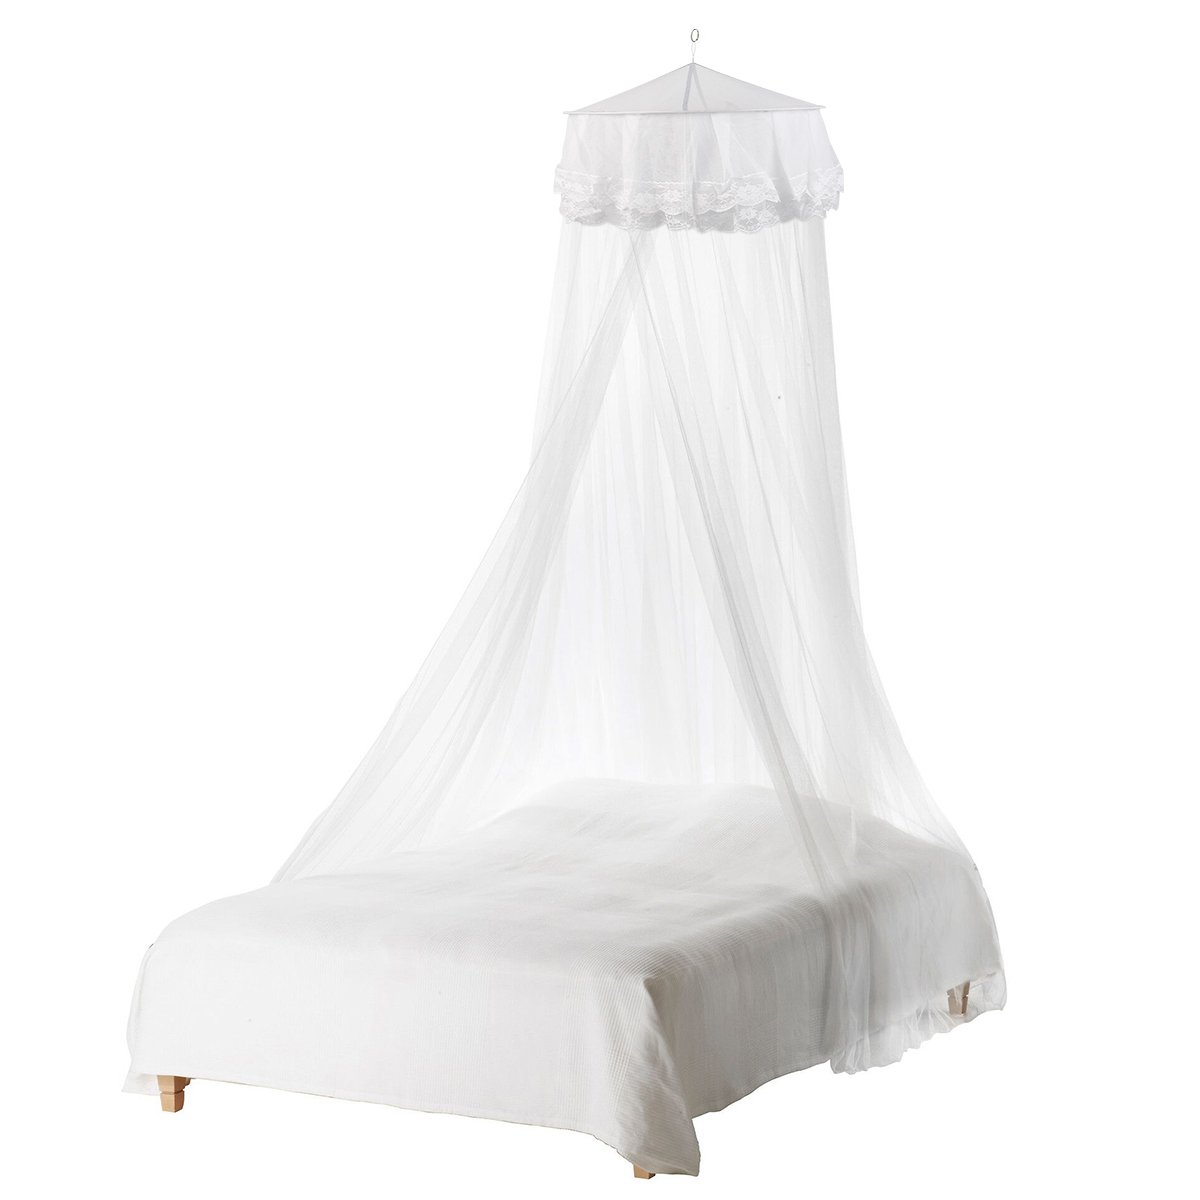 Faltbare stehende Baby-Moskitonetze Regenschirm Round Top Bed Canopy